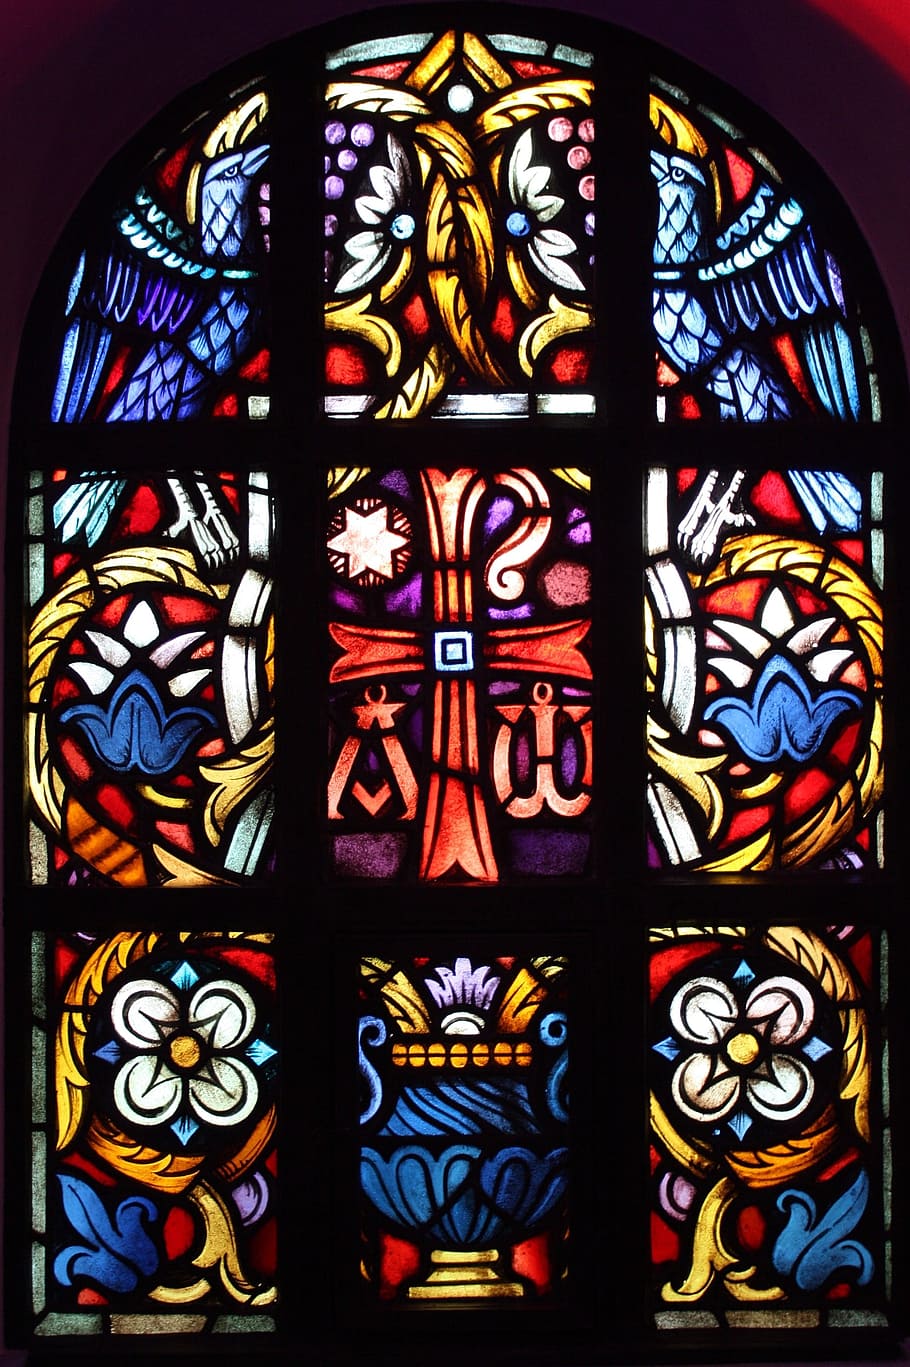 クロス, 教会の窓, イエス, 教会, 窓, ステンドグラス, ガラス, 多色, 崇拝の場所, 芸術と工芸品